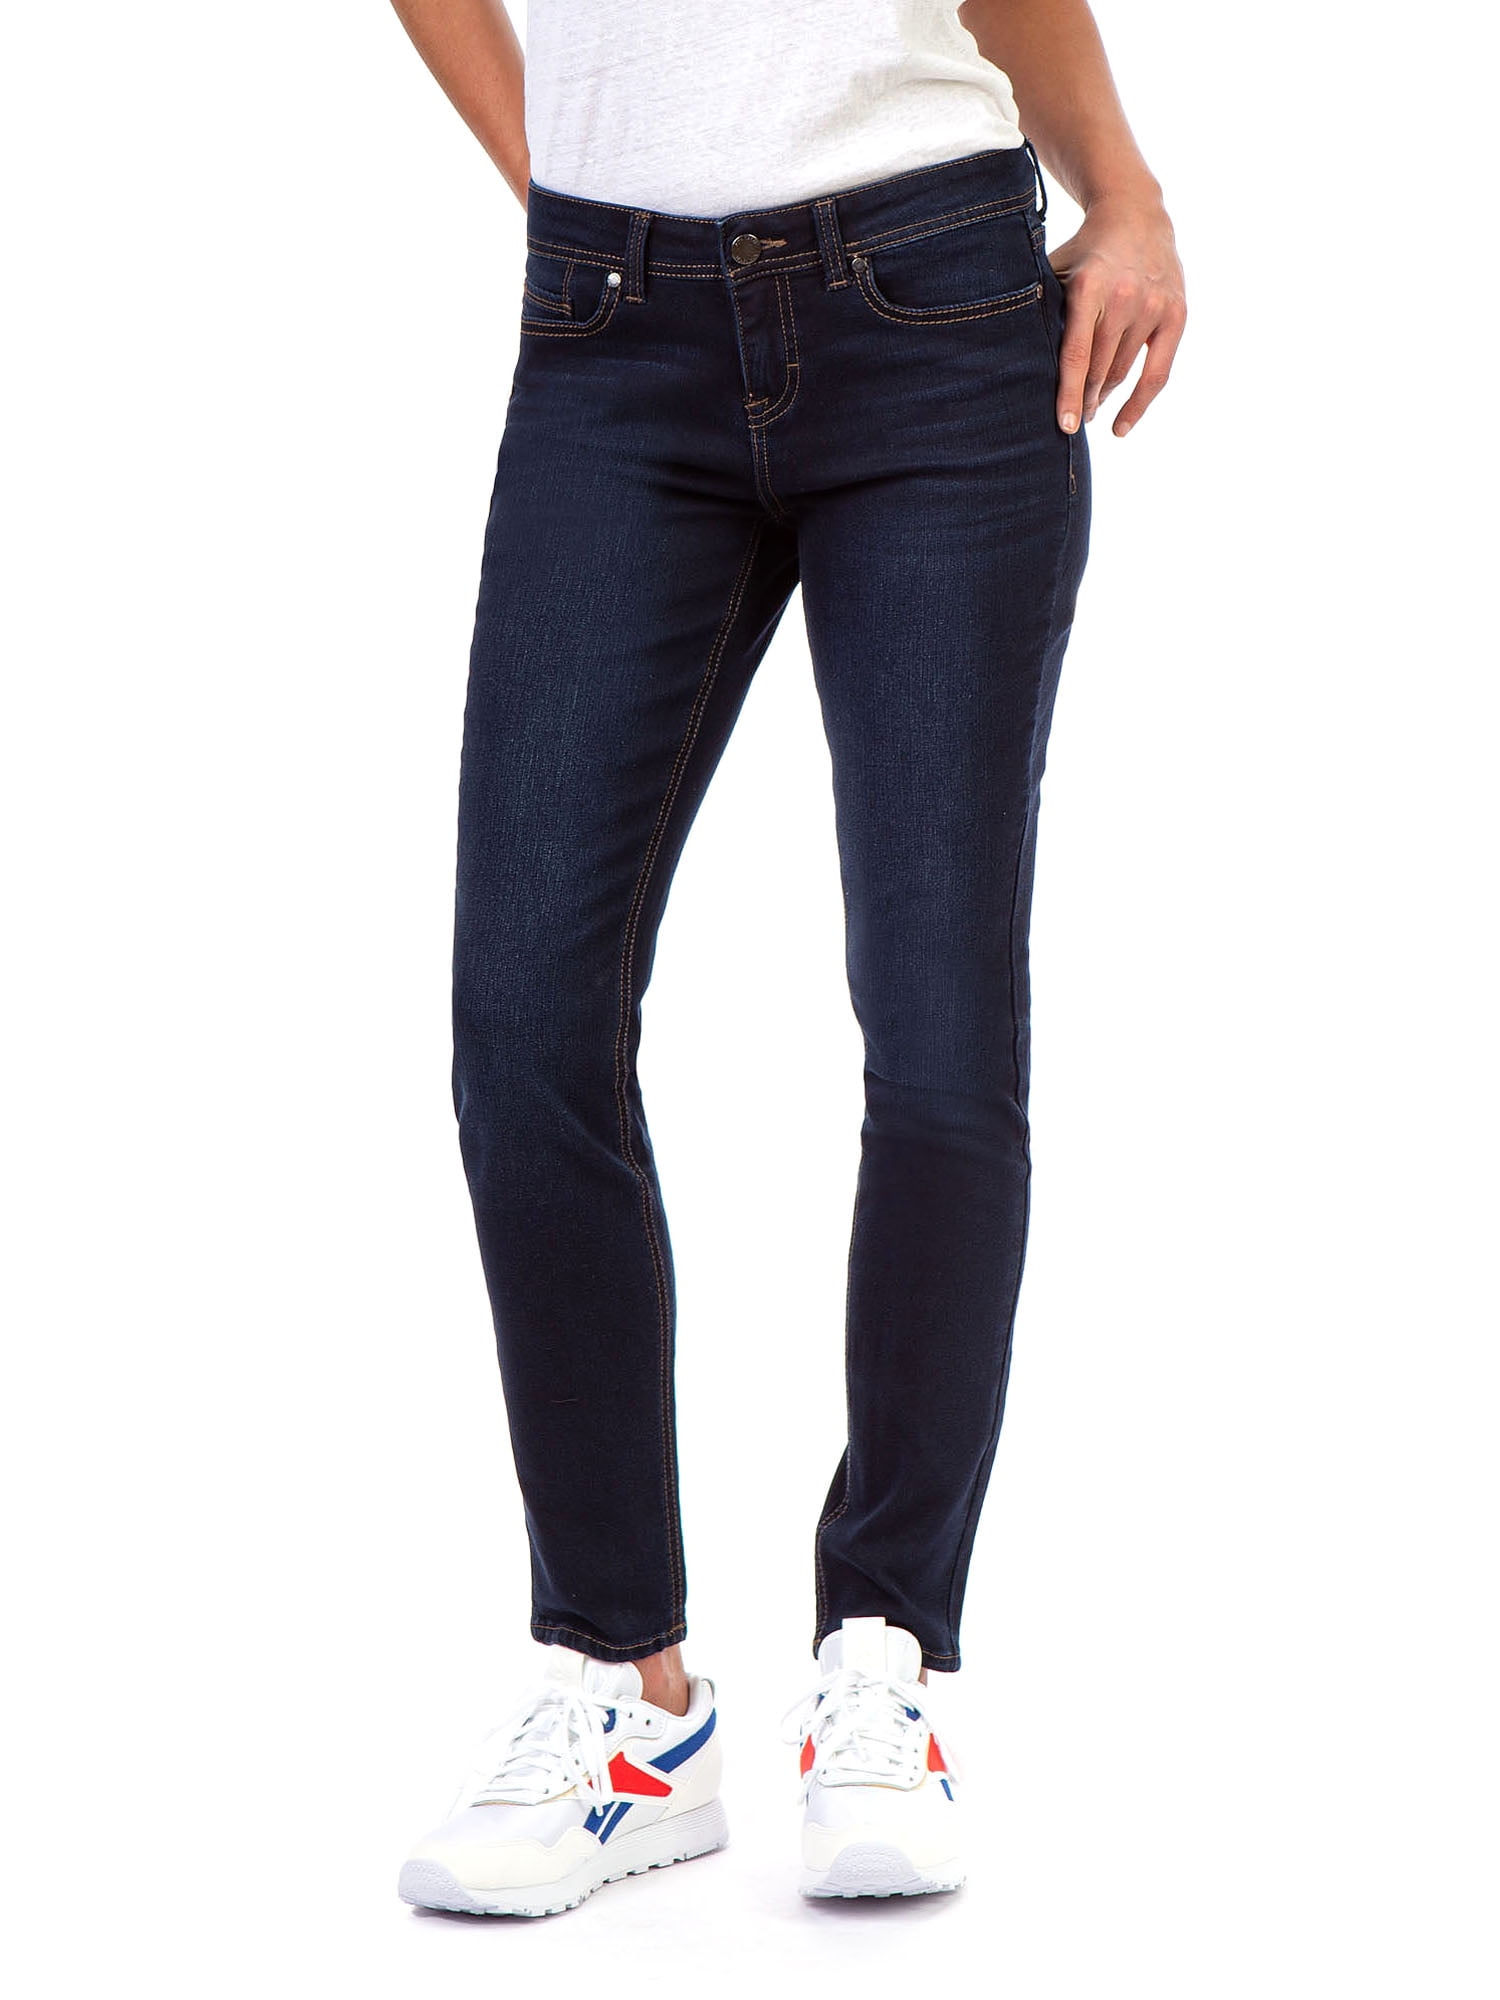 Jordache Women's Mid Rise Skinny Jeans - Walmart.com